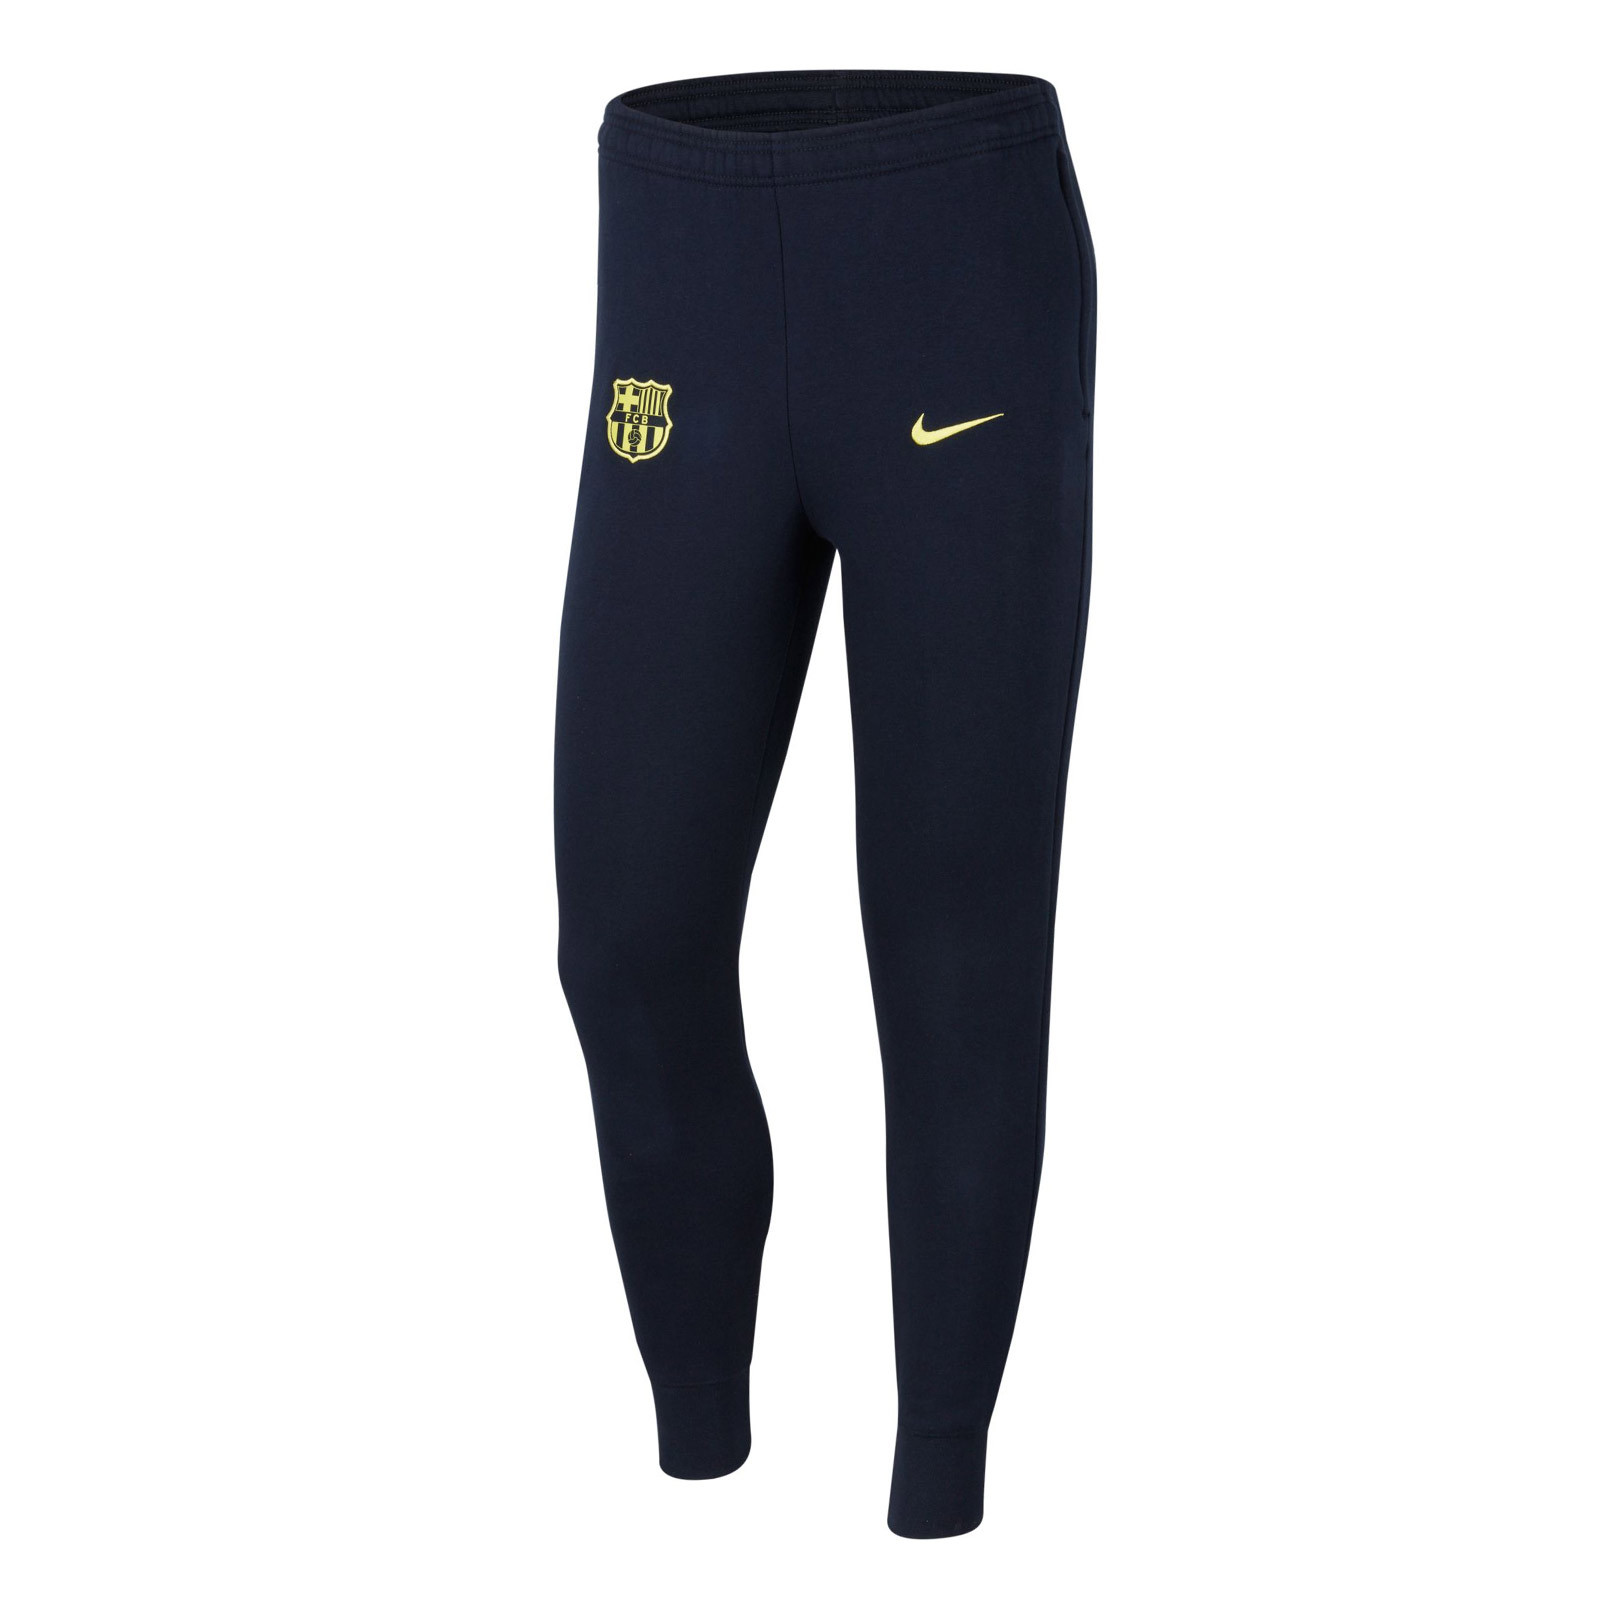 Pantalón Nike 19 20 | futbolmania